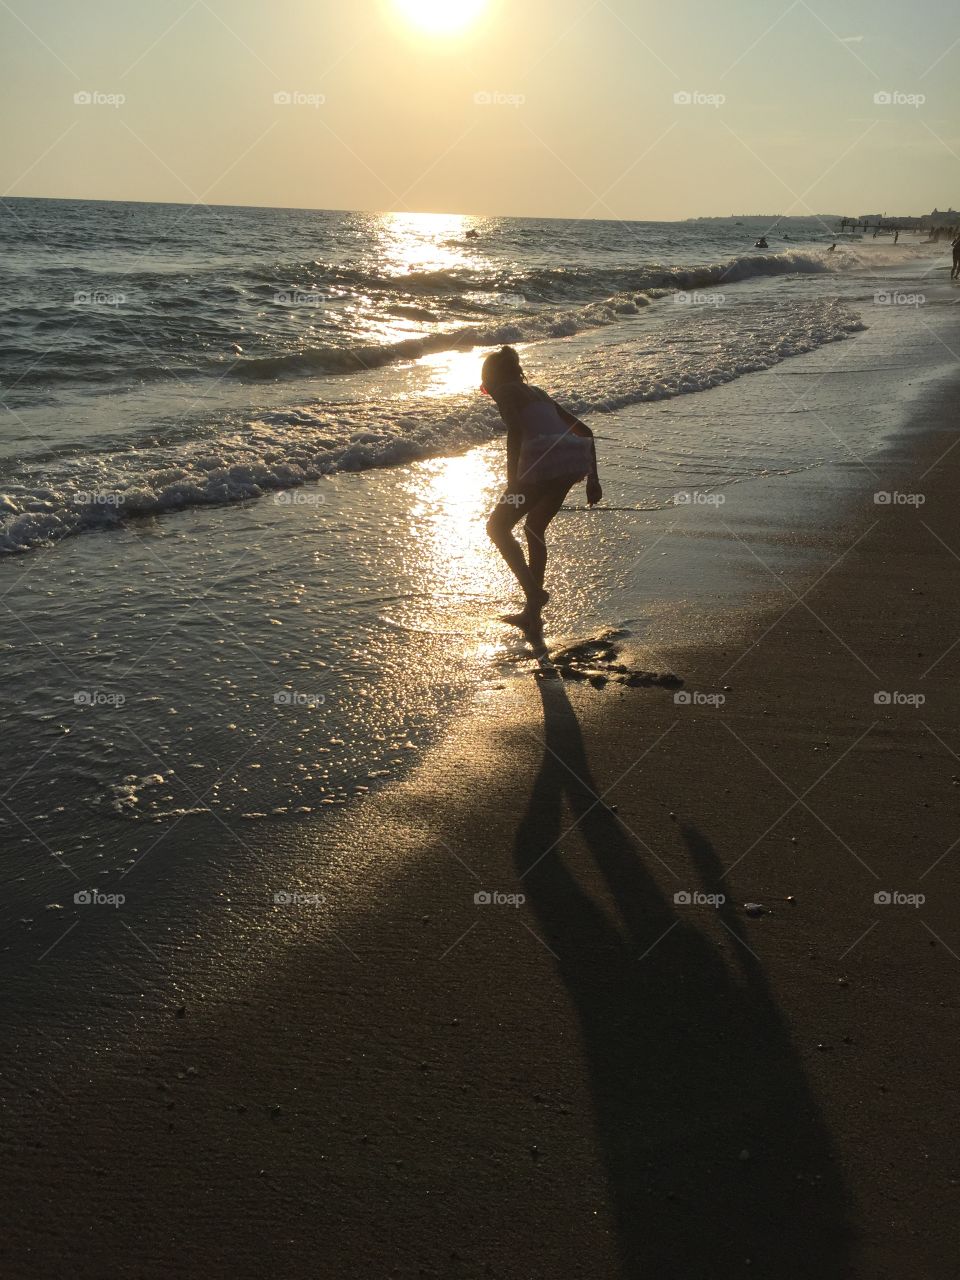 Last summer... seaside...little girl ...sunset beach 